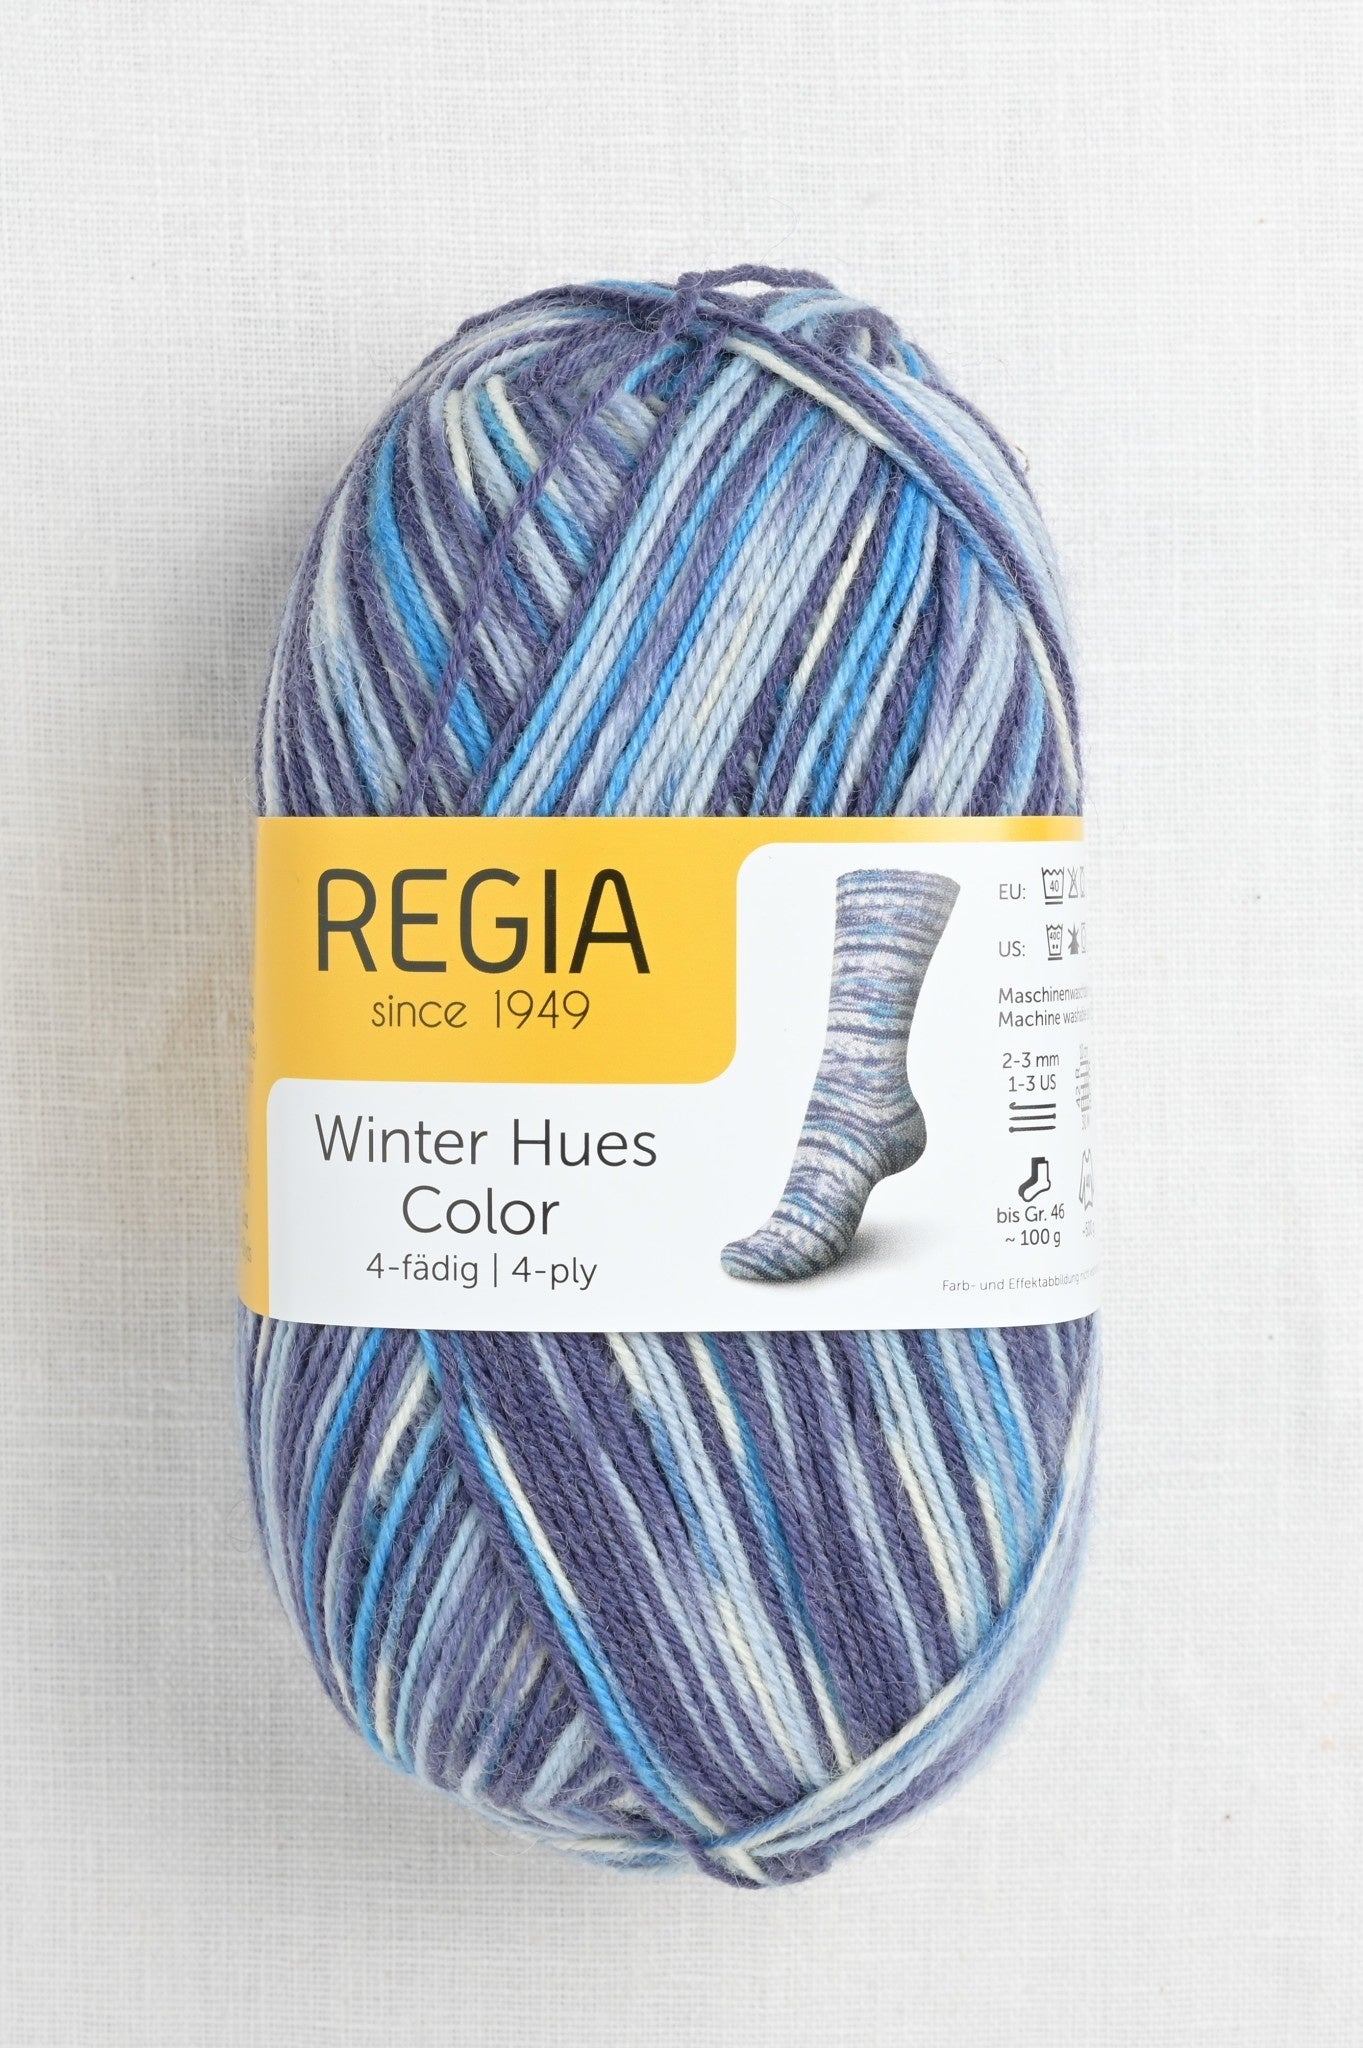 Regia 4-ply Winter Hues Color Assortment